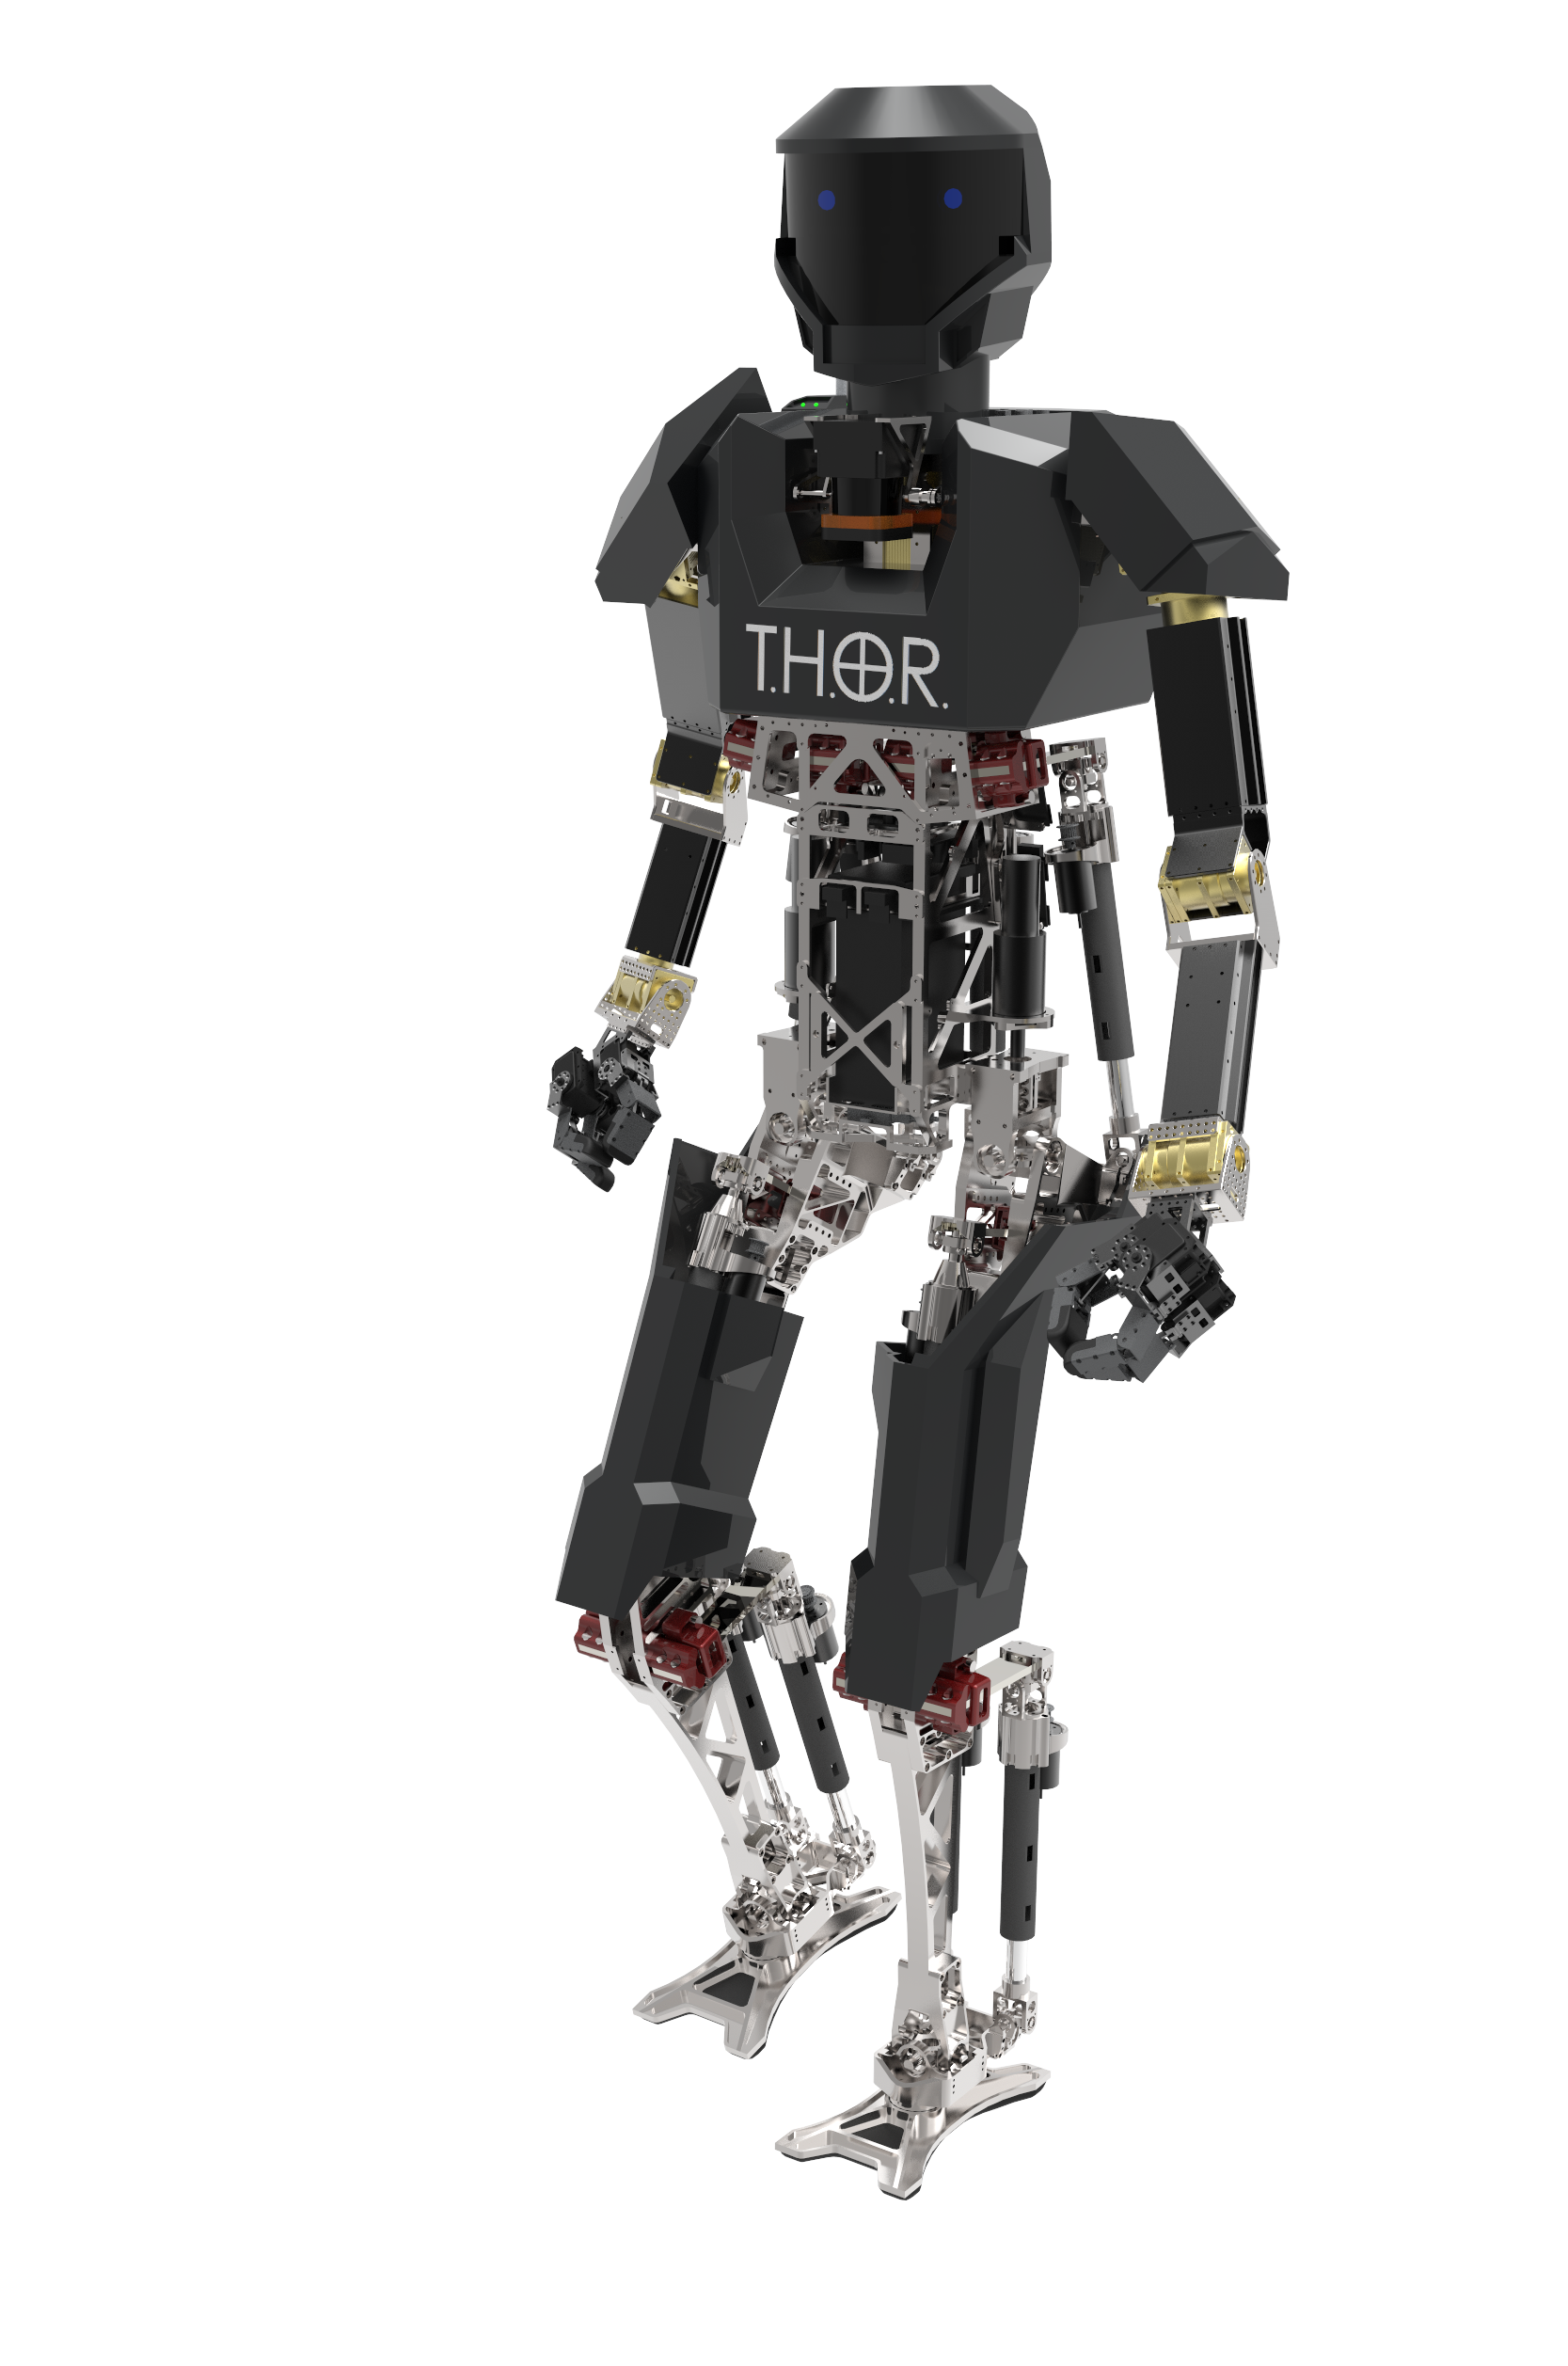 Virginia Tech's THOR robot